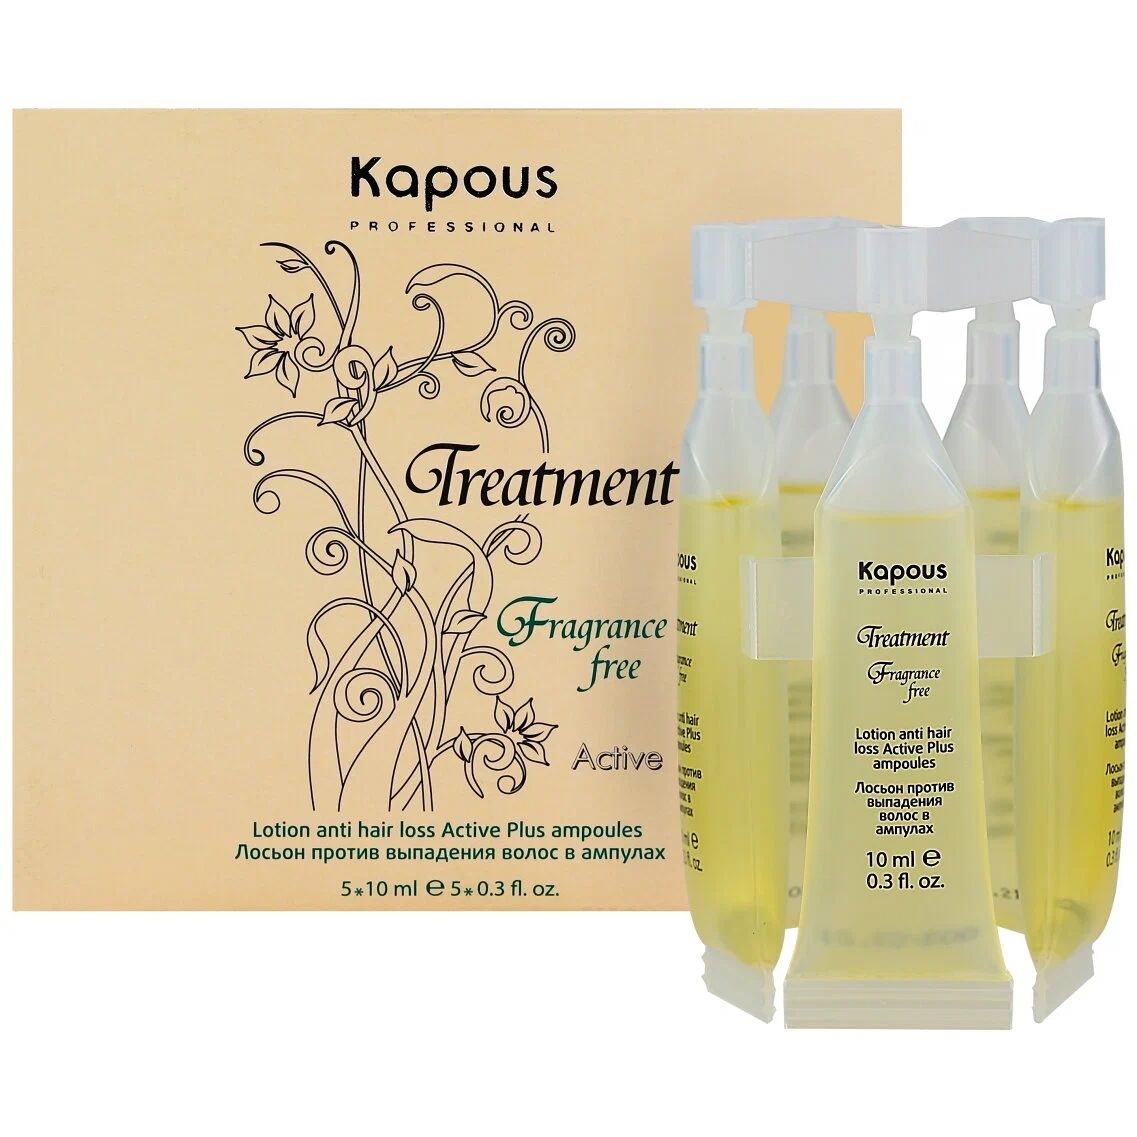 Лосьон для волос Kapous Professional Treatment Fragrance free в ампулах 5х10 мл дверка поддувальная дпг 2е 32 5х21 5х10 5 см